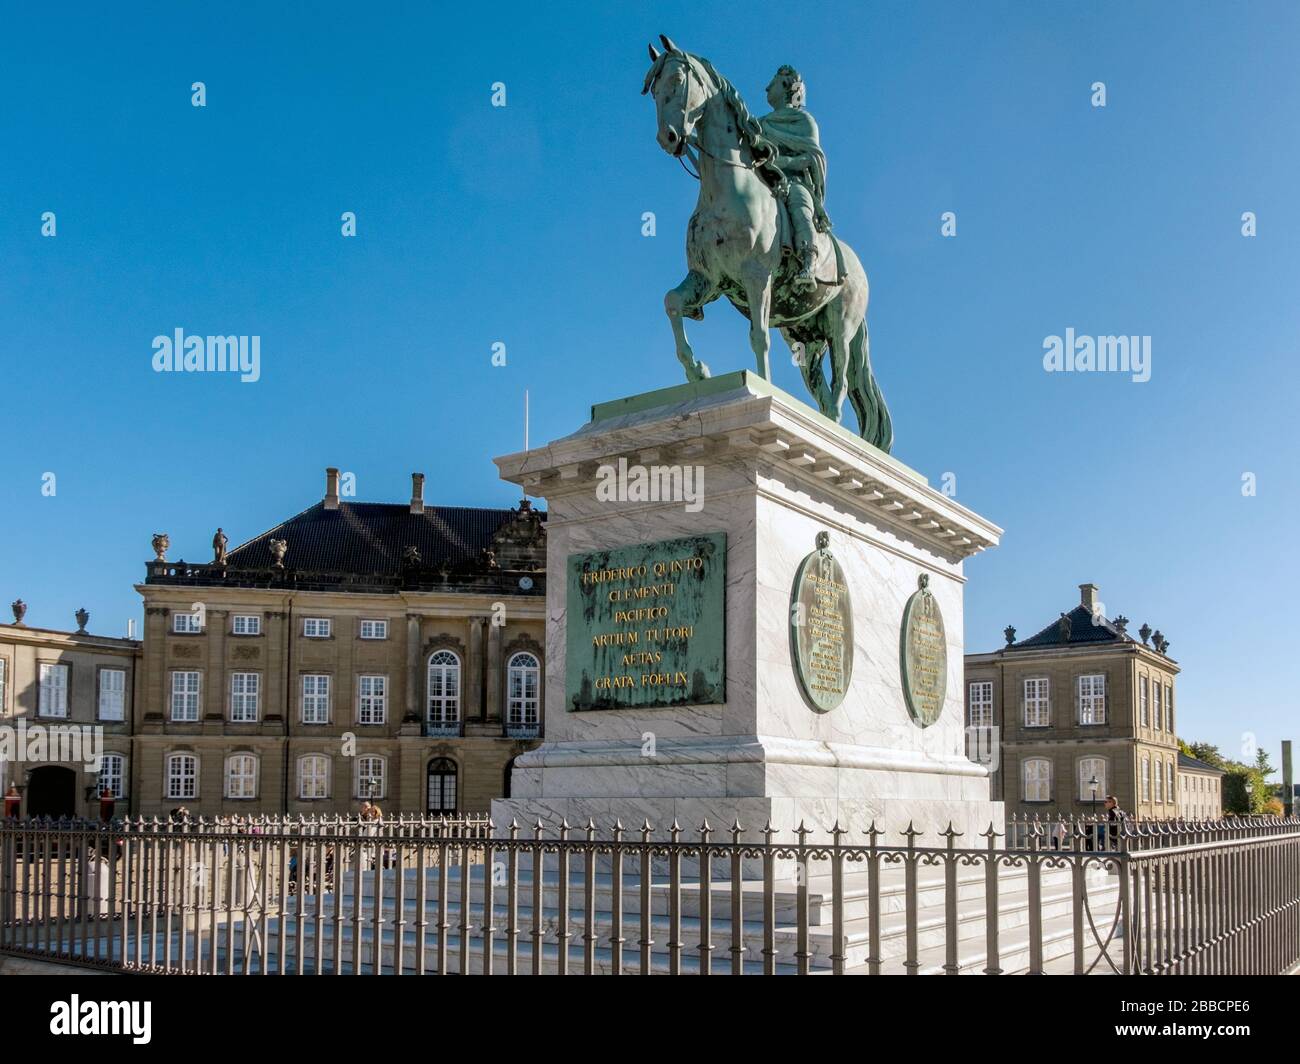 Statua equestre in bronzo del 18th secolo del re Frederik V di Danimarca, Piazza Amalienborg, Copenaghen, Danimarca Foto Stock